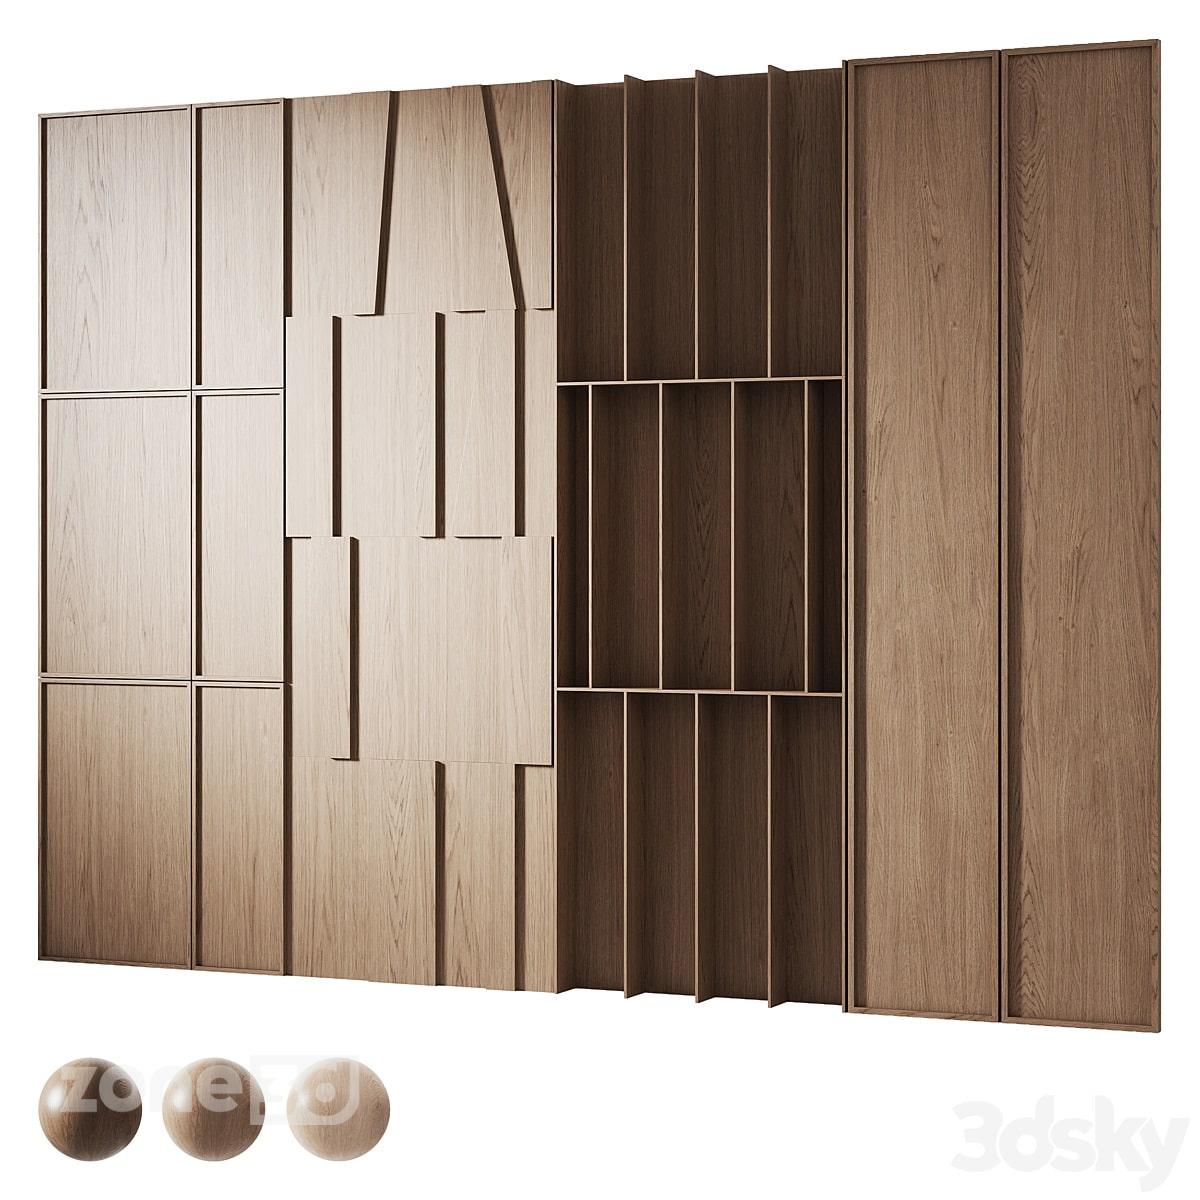 آبجکت پنل دیواری مدرن چوبی با 6 طرح متفاوت همراه با شلف 